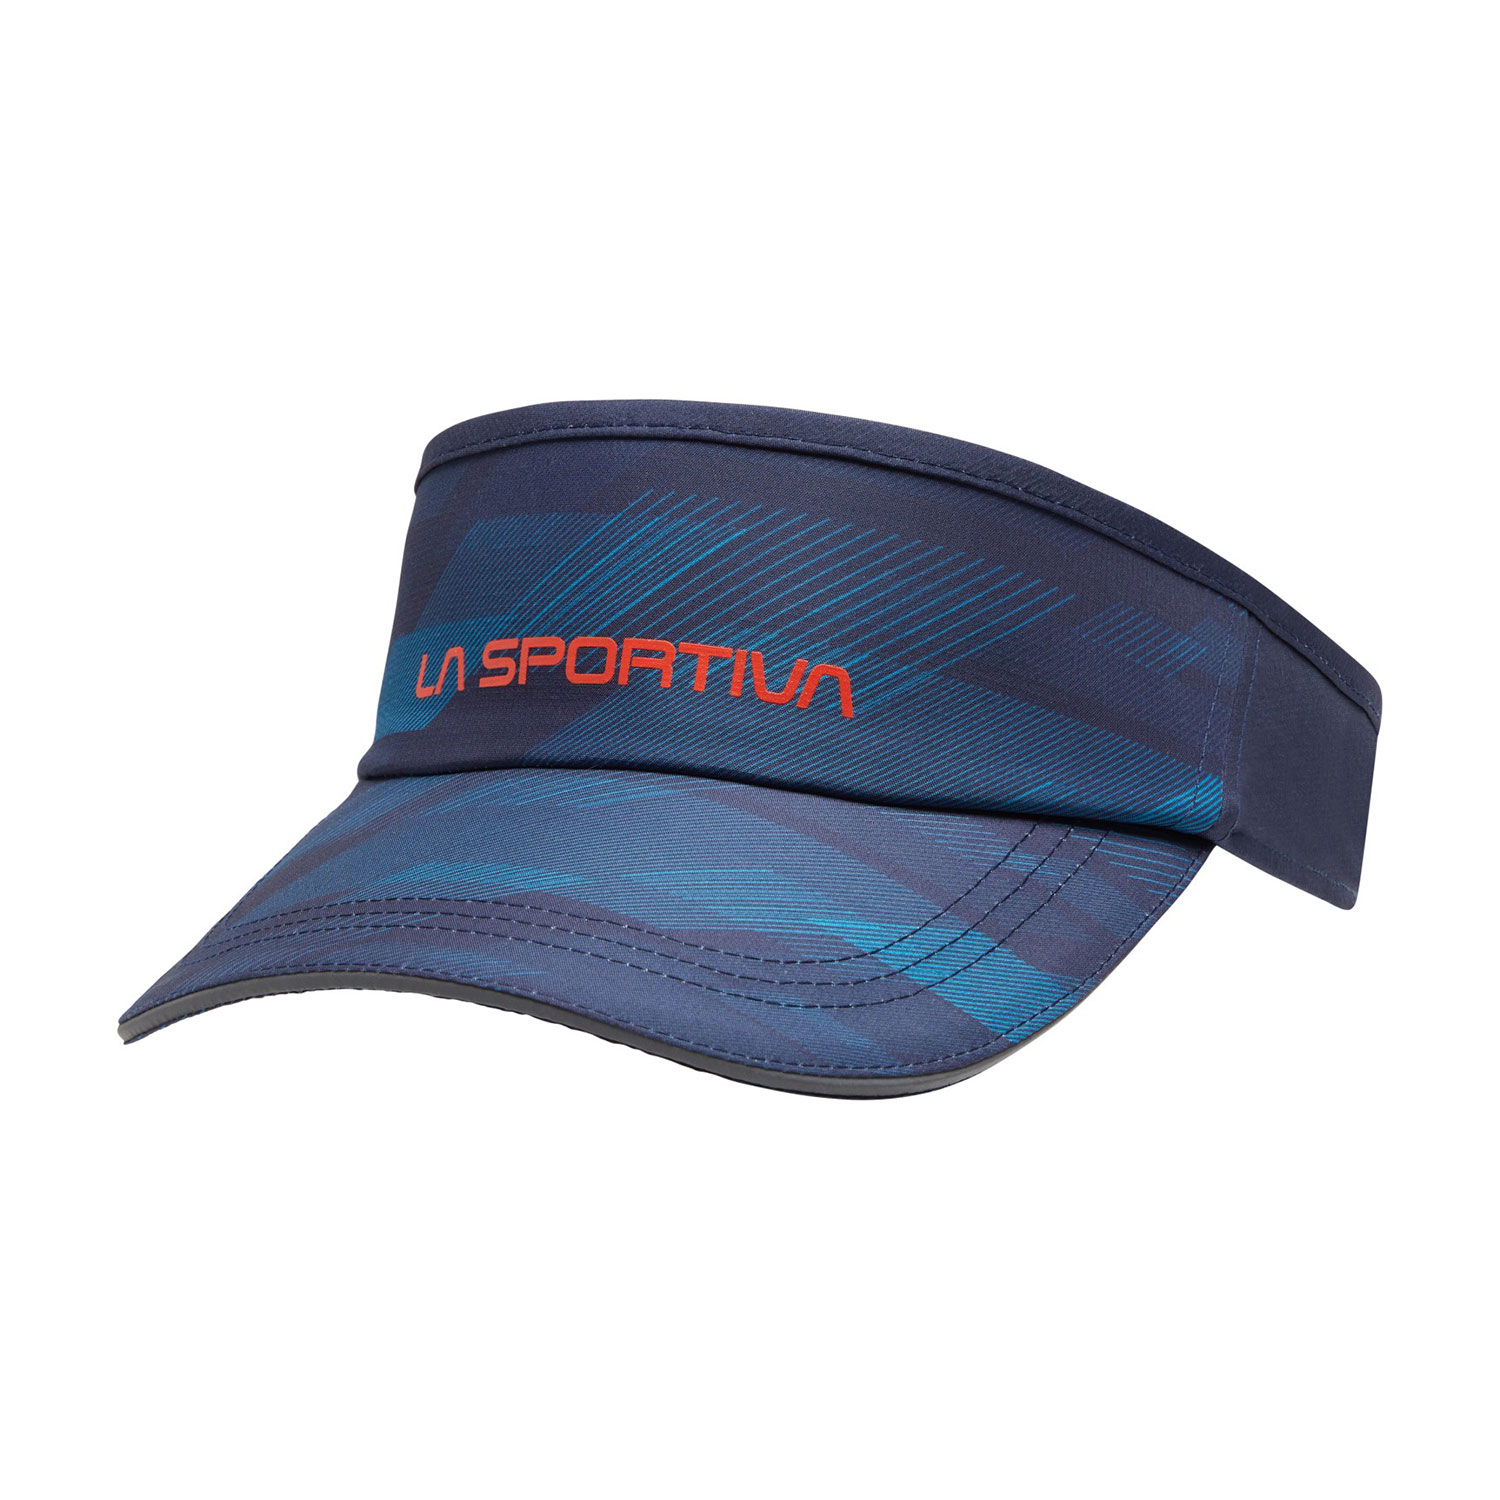 La Sportiva Skyrun Visiera - Deep Sea/Tropic Blue